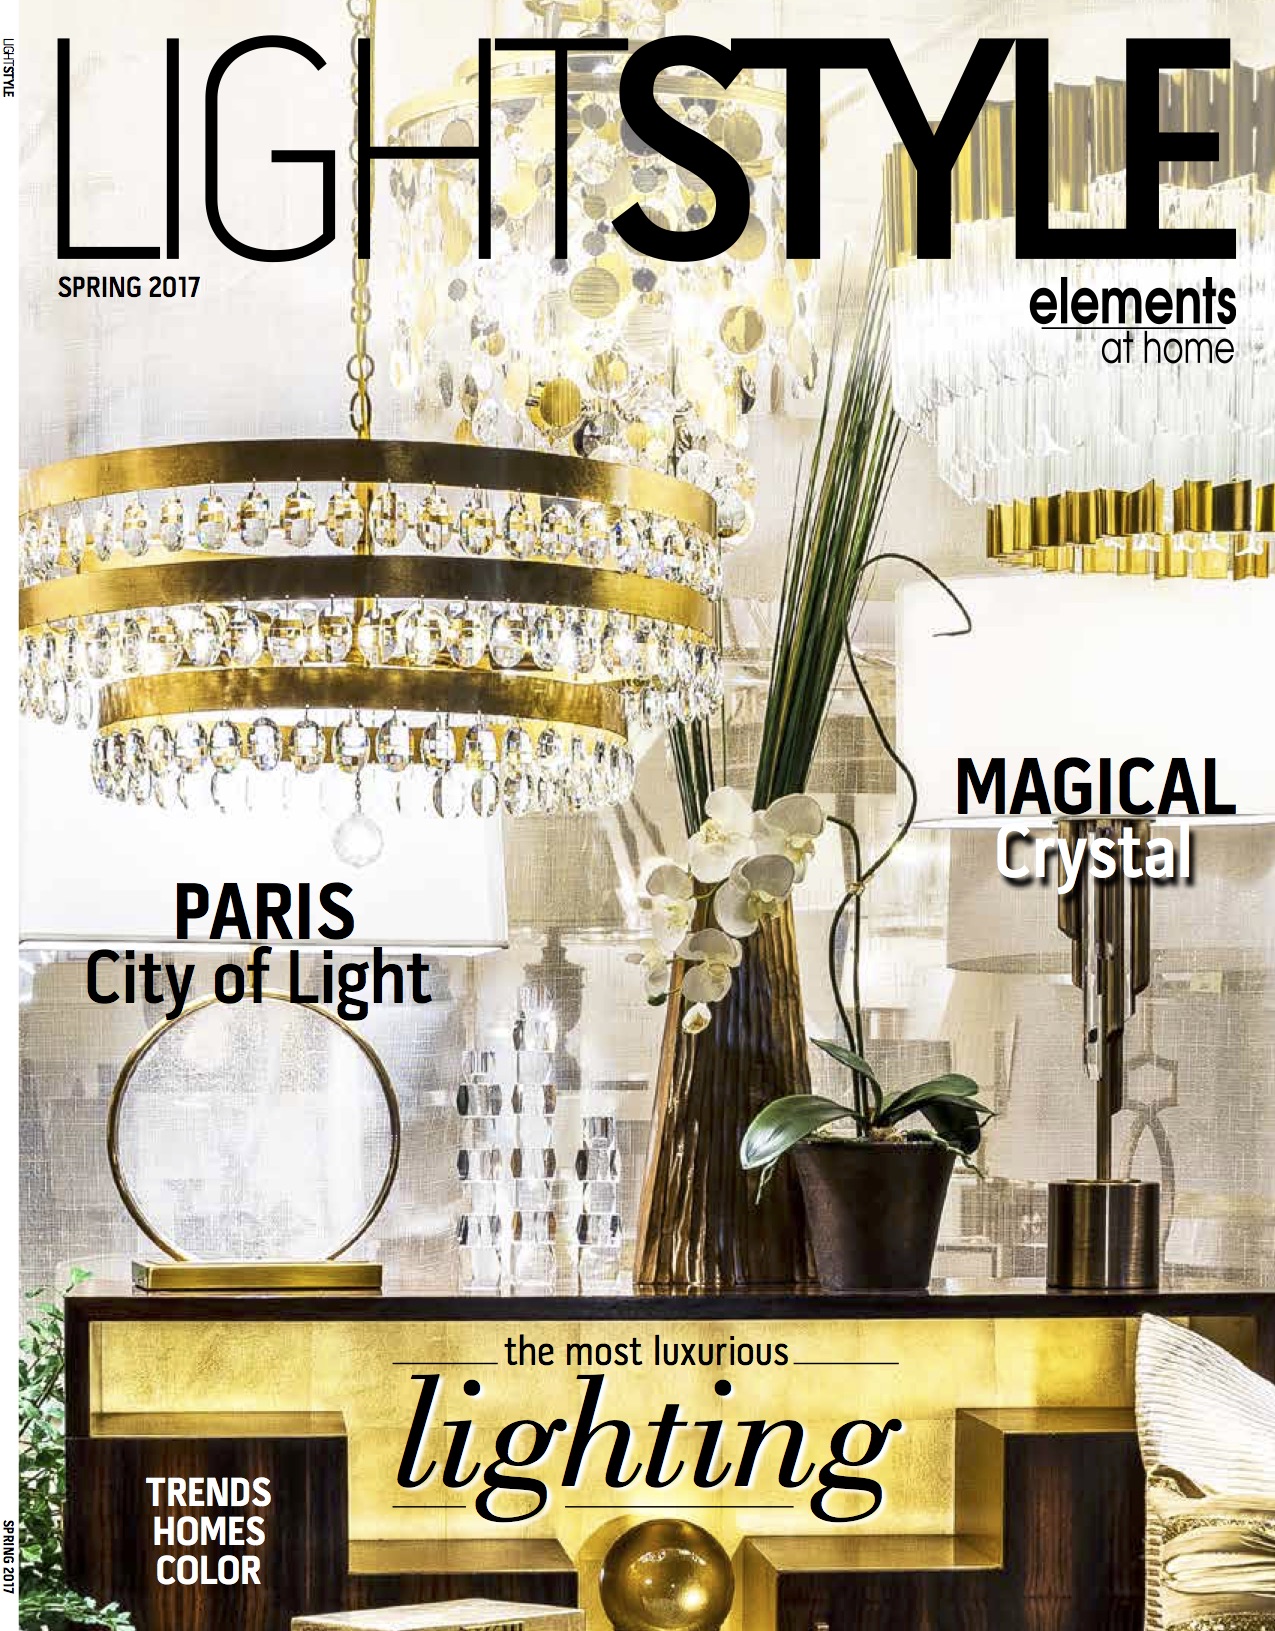 lightstyle-magazine